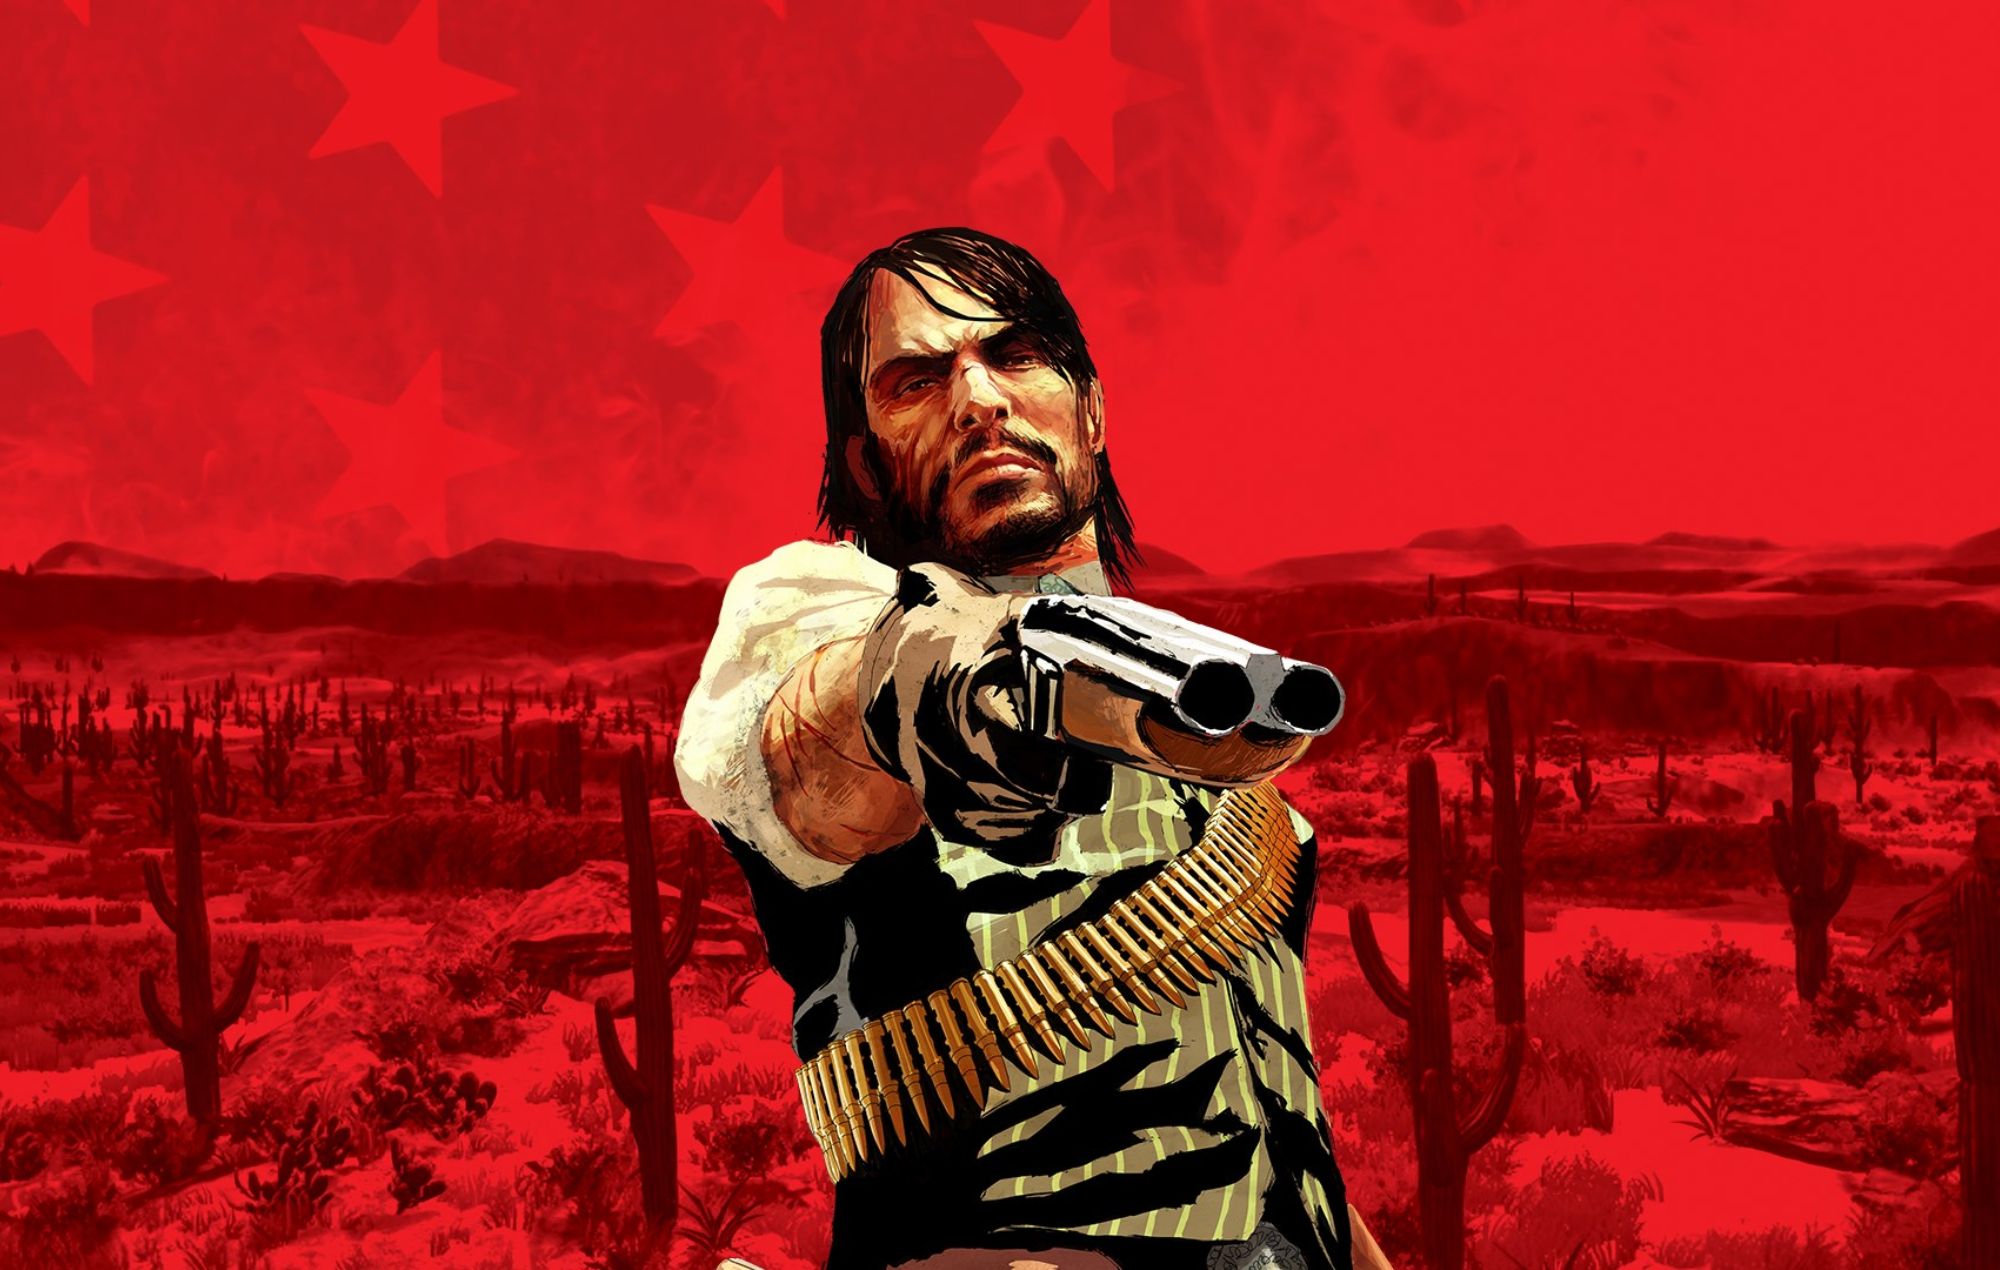 La nueva calificación de 'Red Dead Redemption' dispara los rumores de un remake